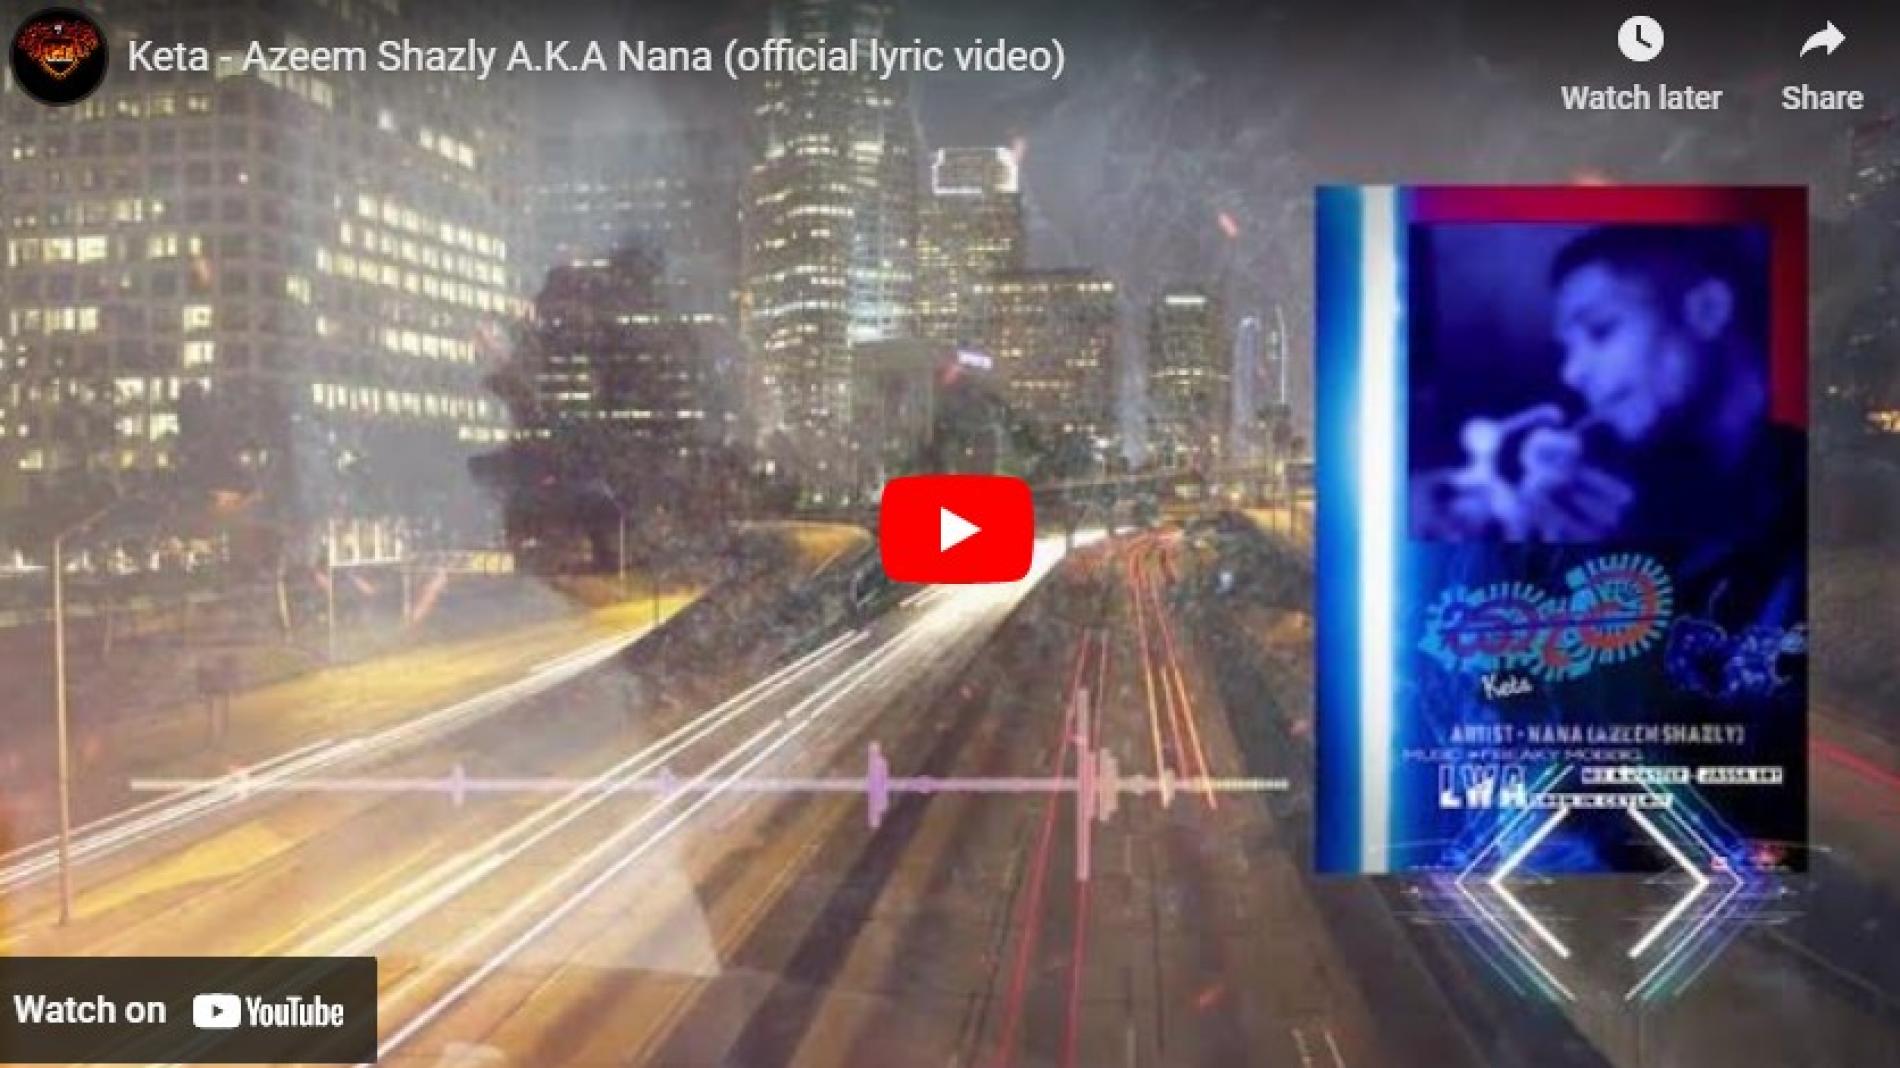 New Music : Keta – Azeem Shazly A.K.A Nana (official lyric video)